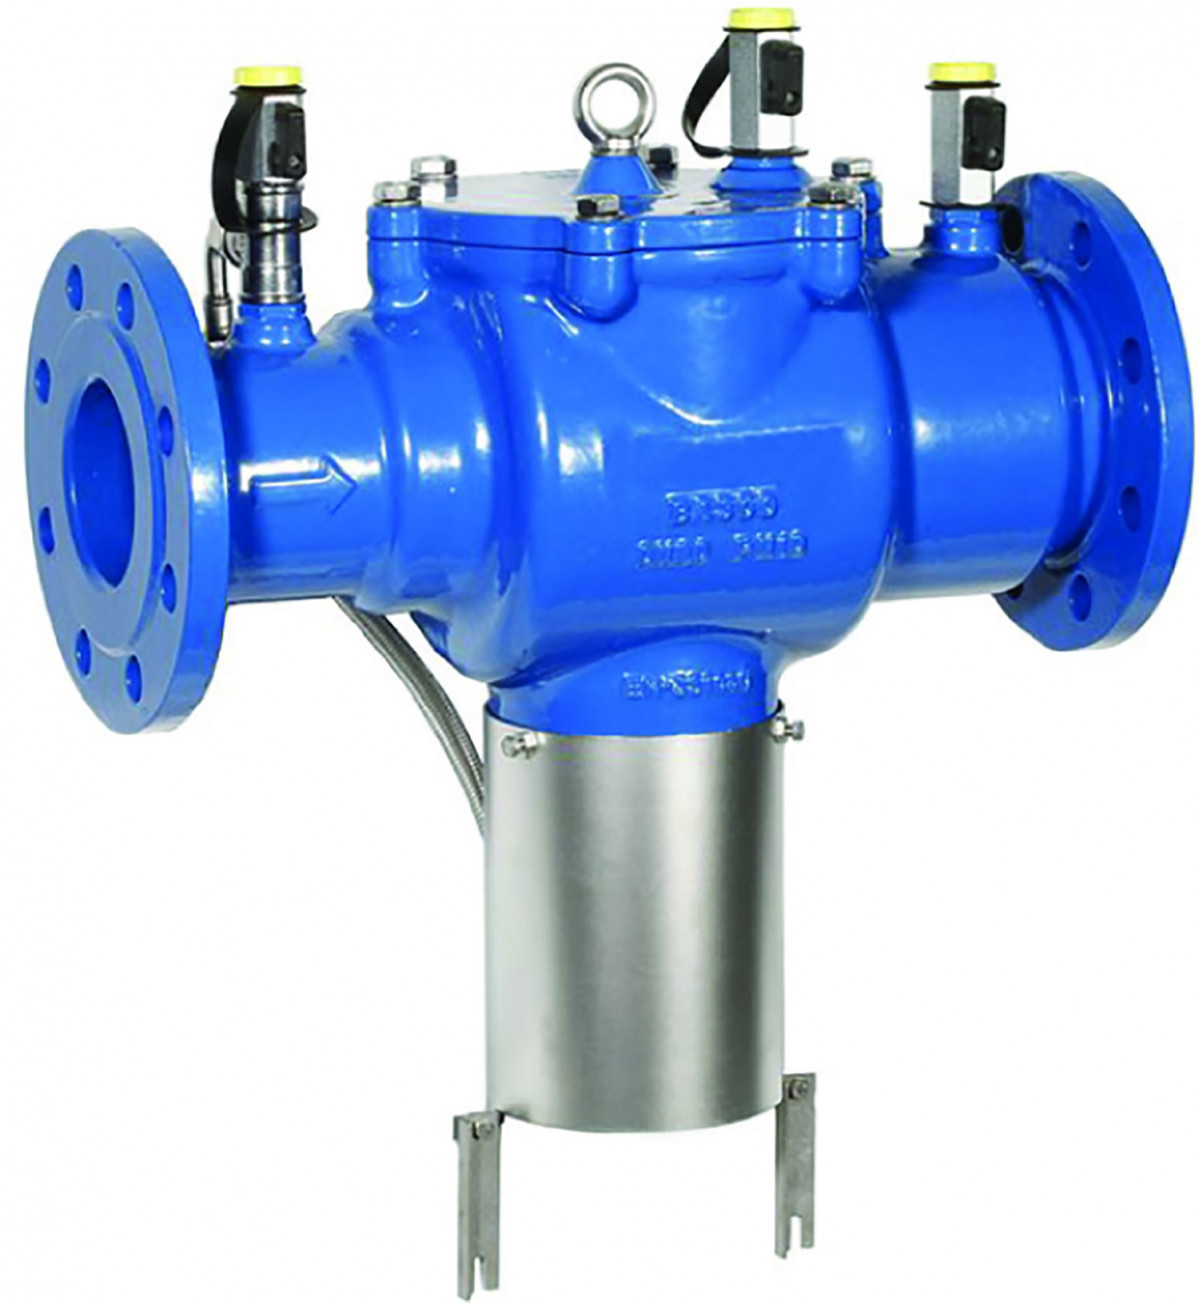 El desconectador hidráulico protege los sistemas de agua potable contra los retornos de presión, retornos de caudal y contrasifonaje o succión de agua contaminada.